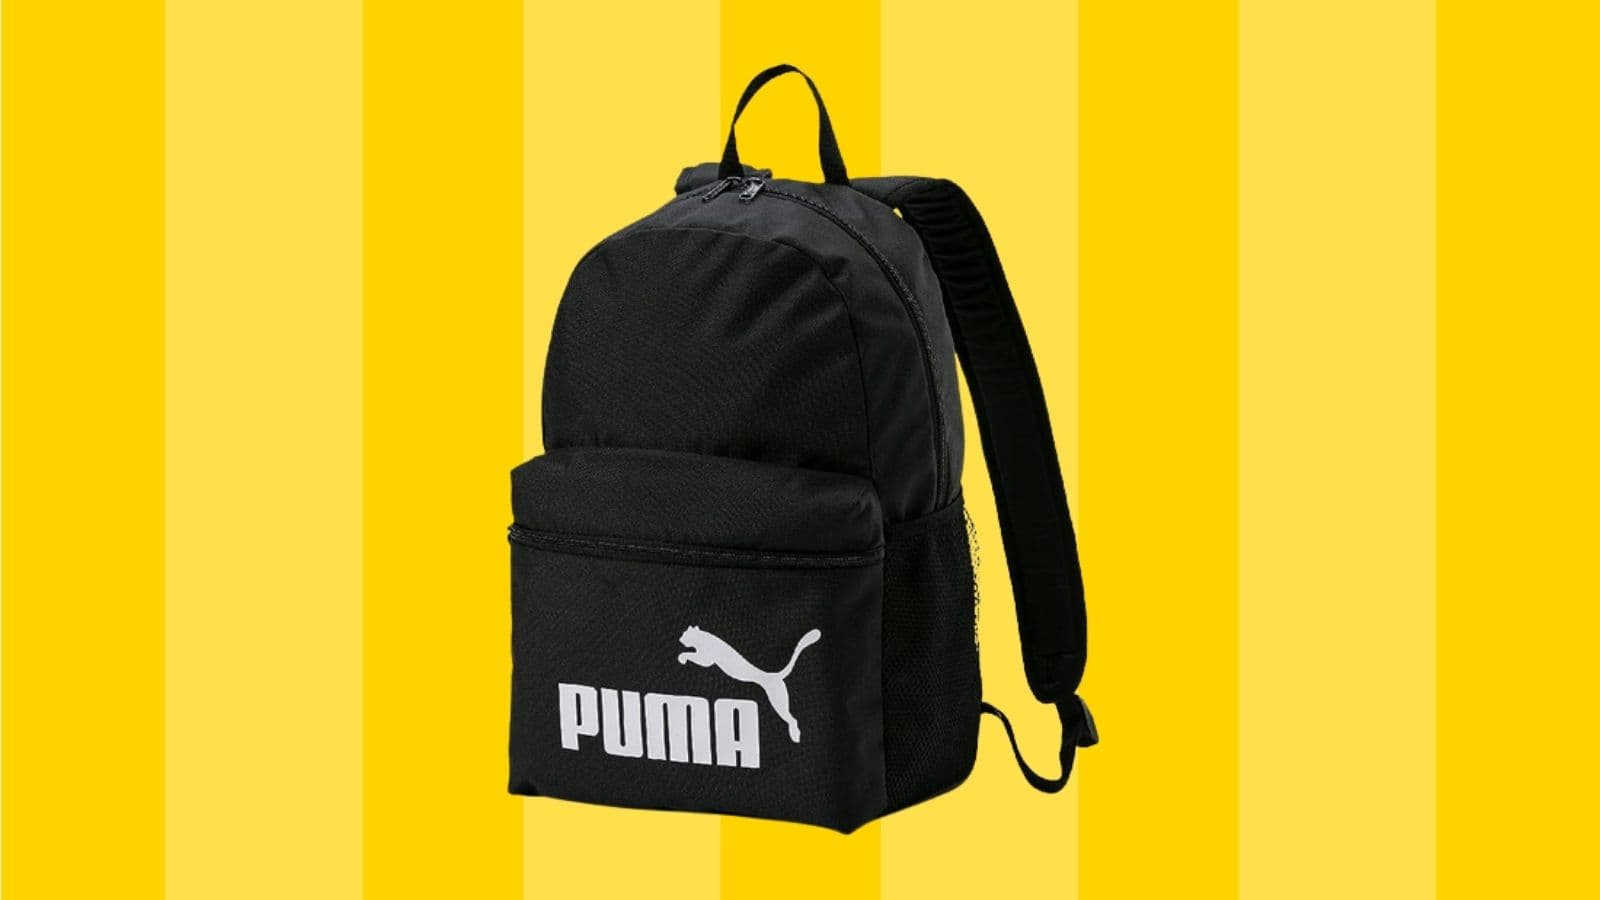 Puma fracasse le prix de son sac à dos sur ce site très connu